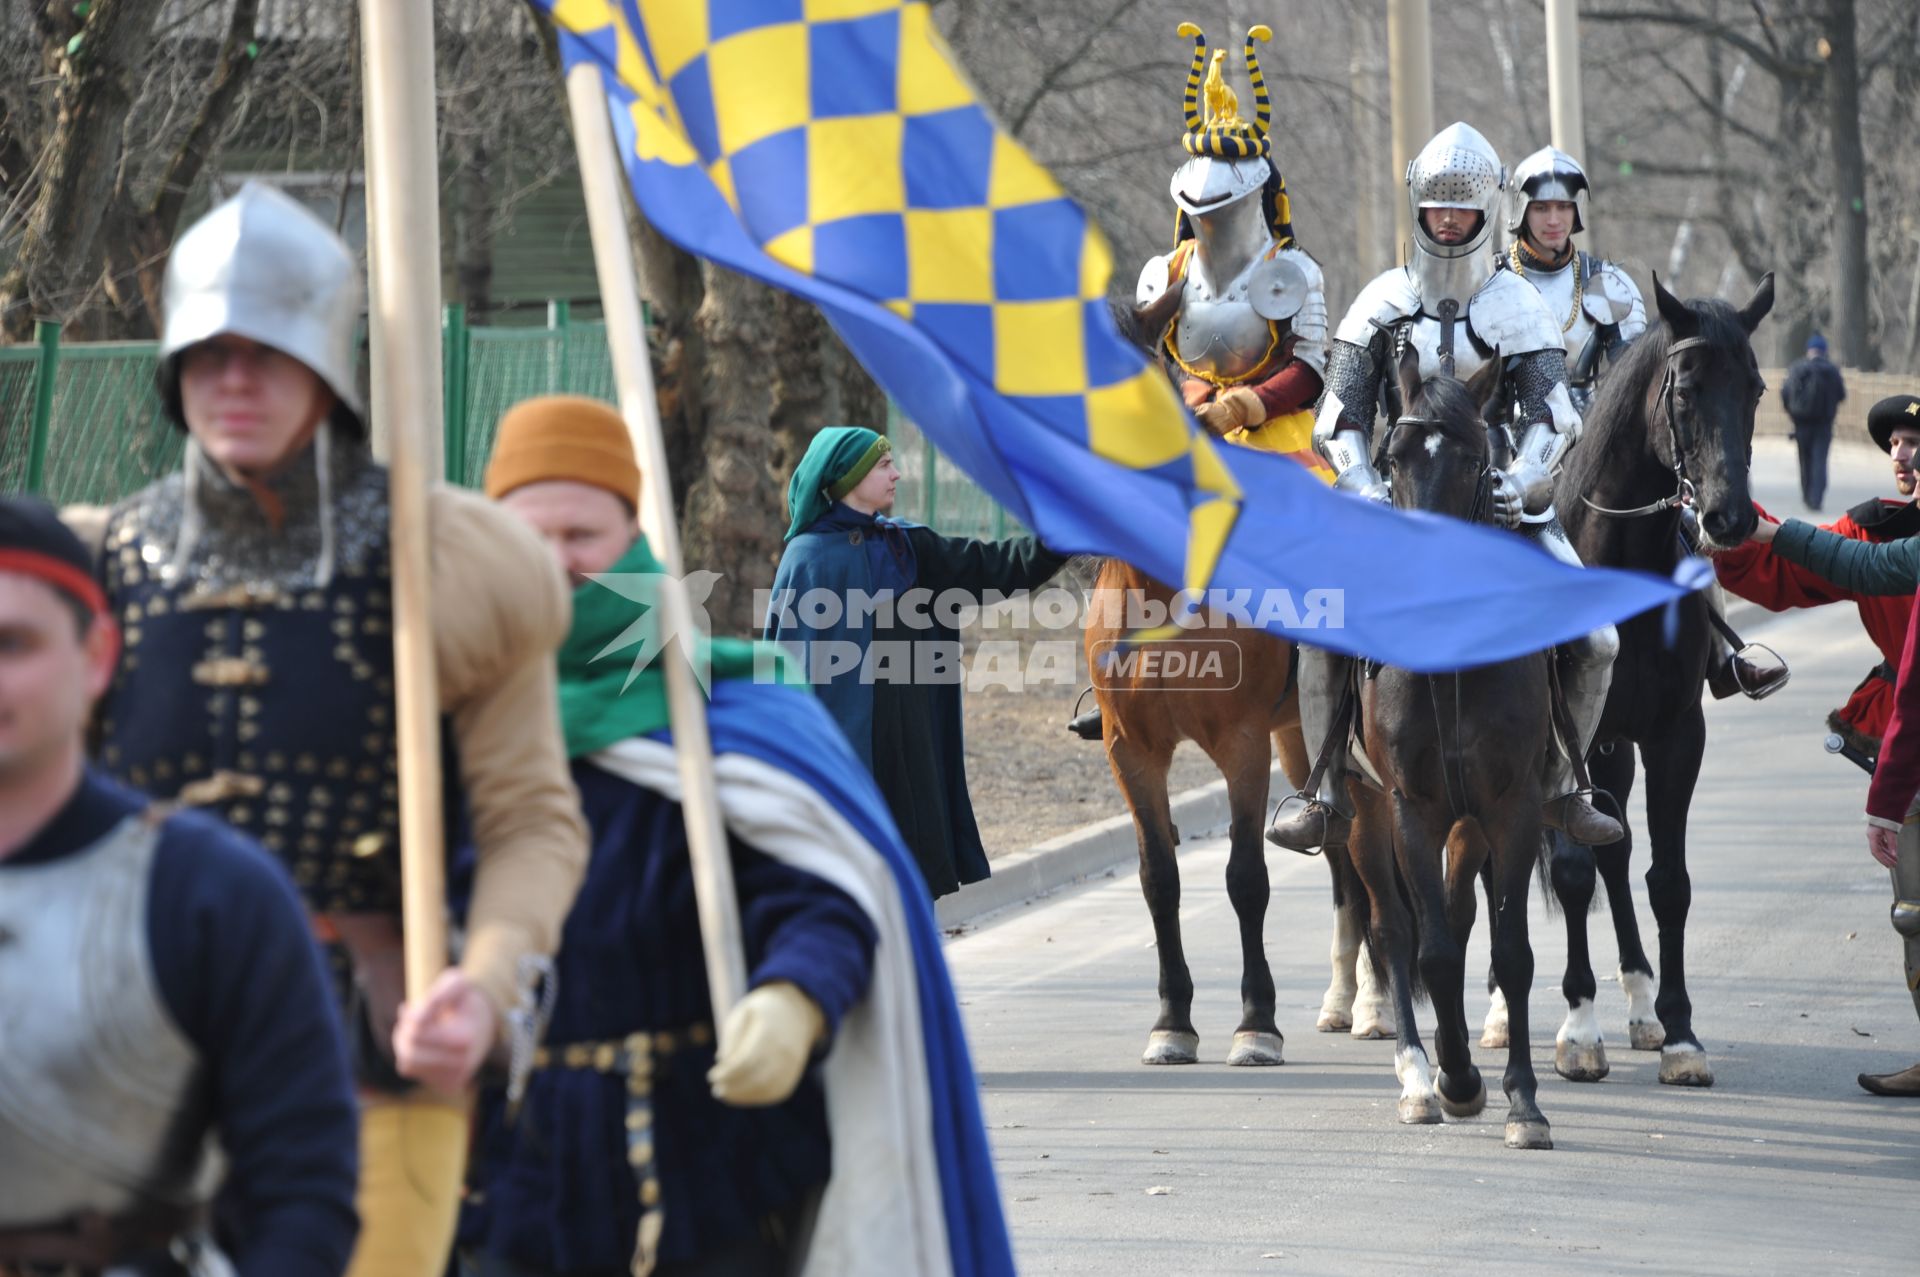 Шествие конных рыцарей в средневековых доспехах на ВДНХ в Москве.